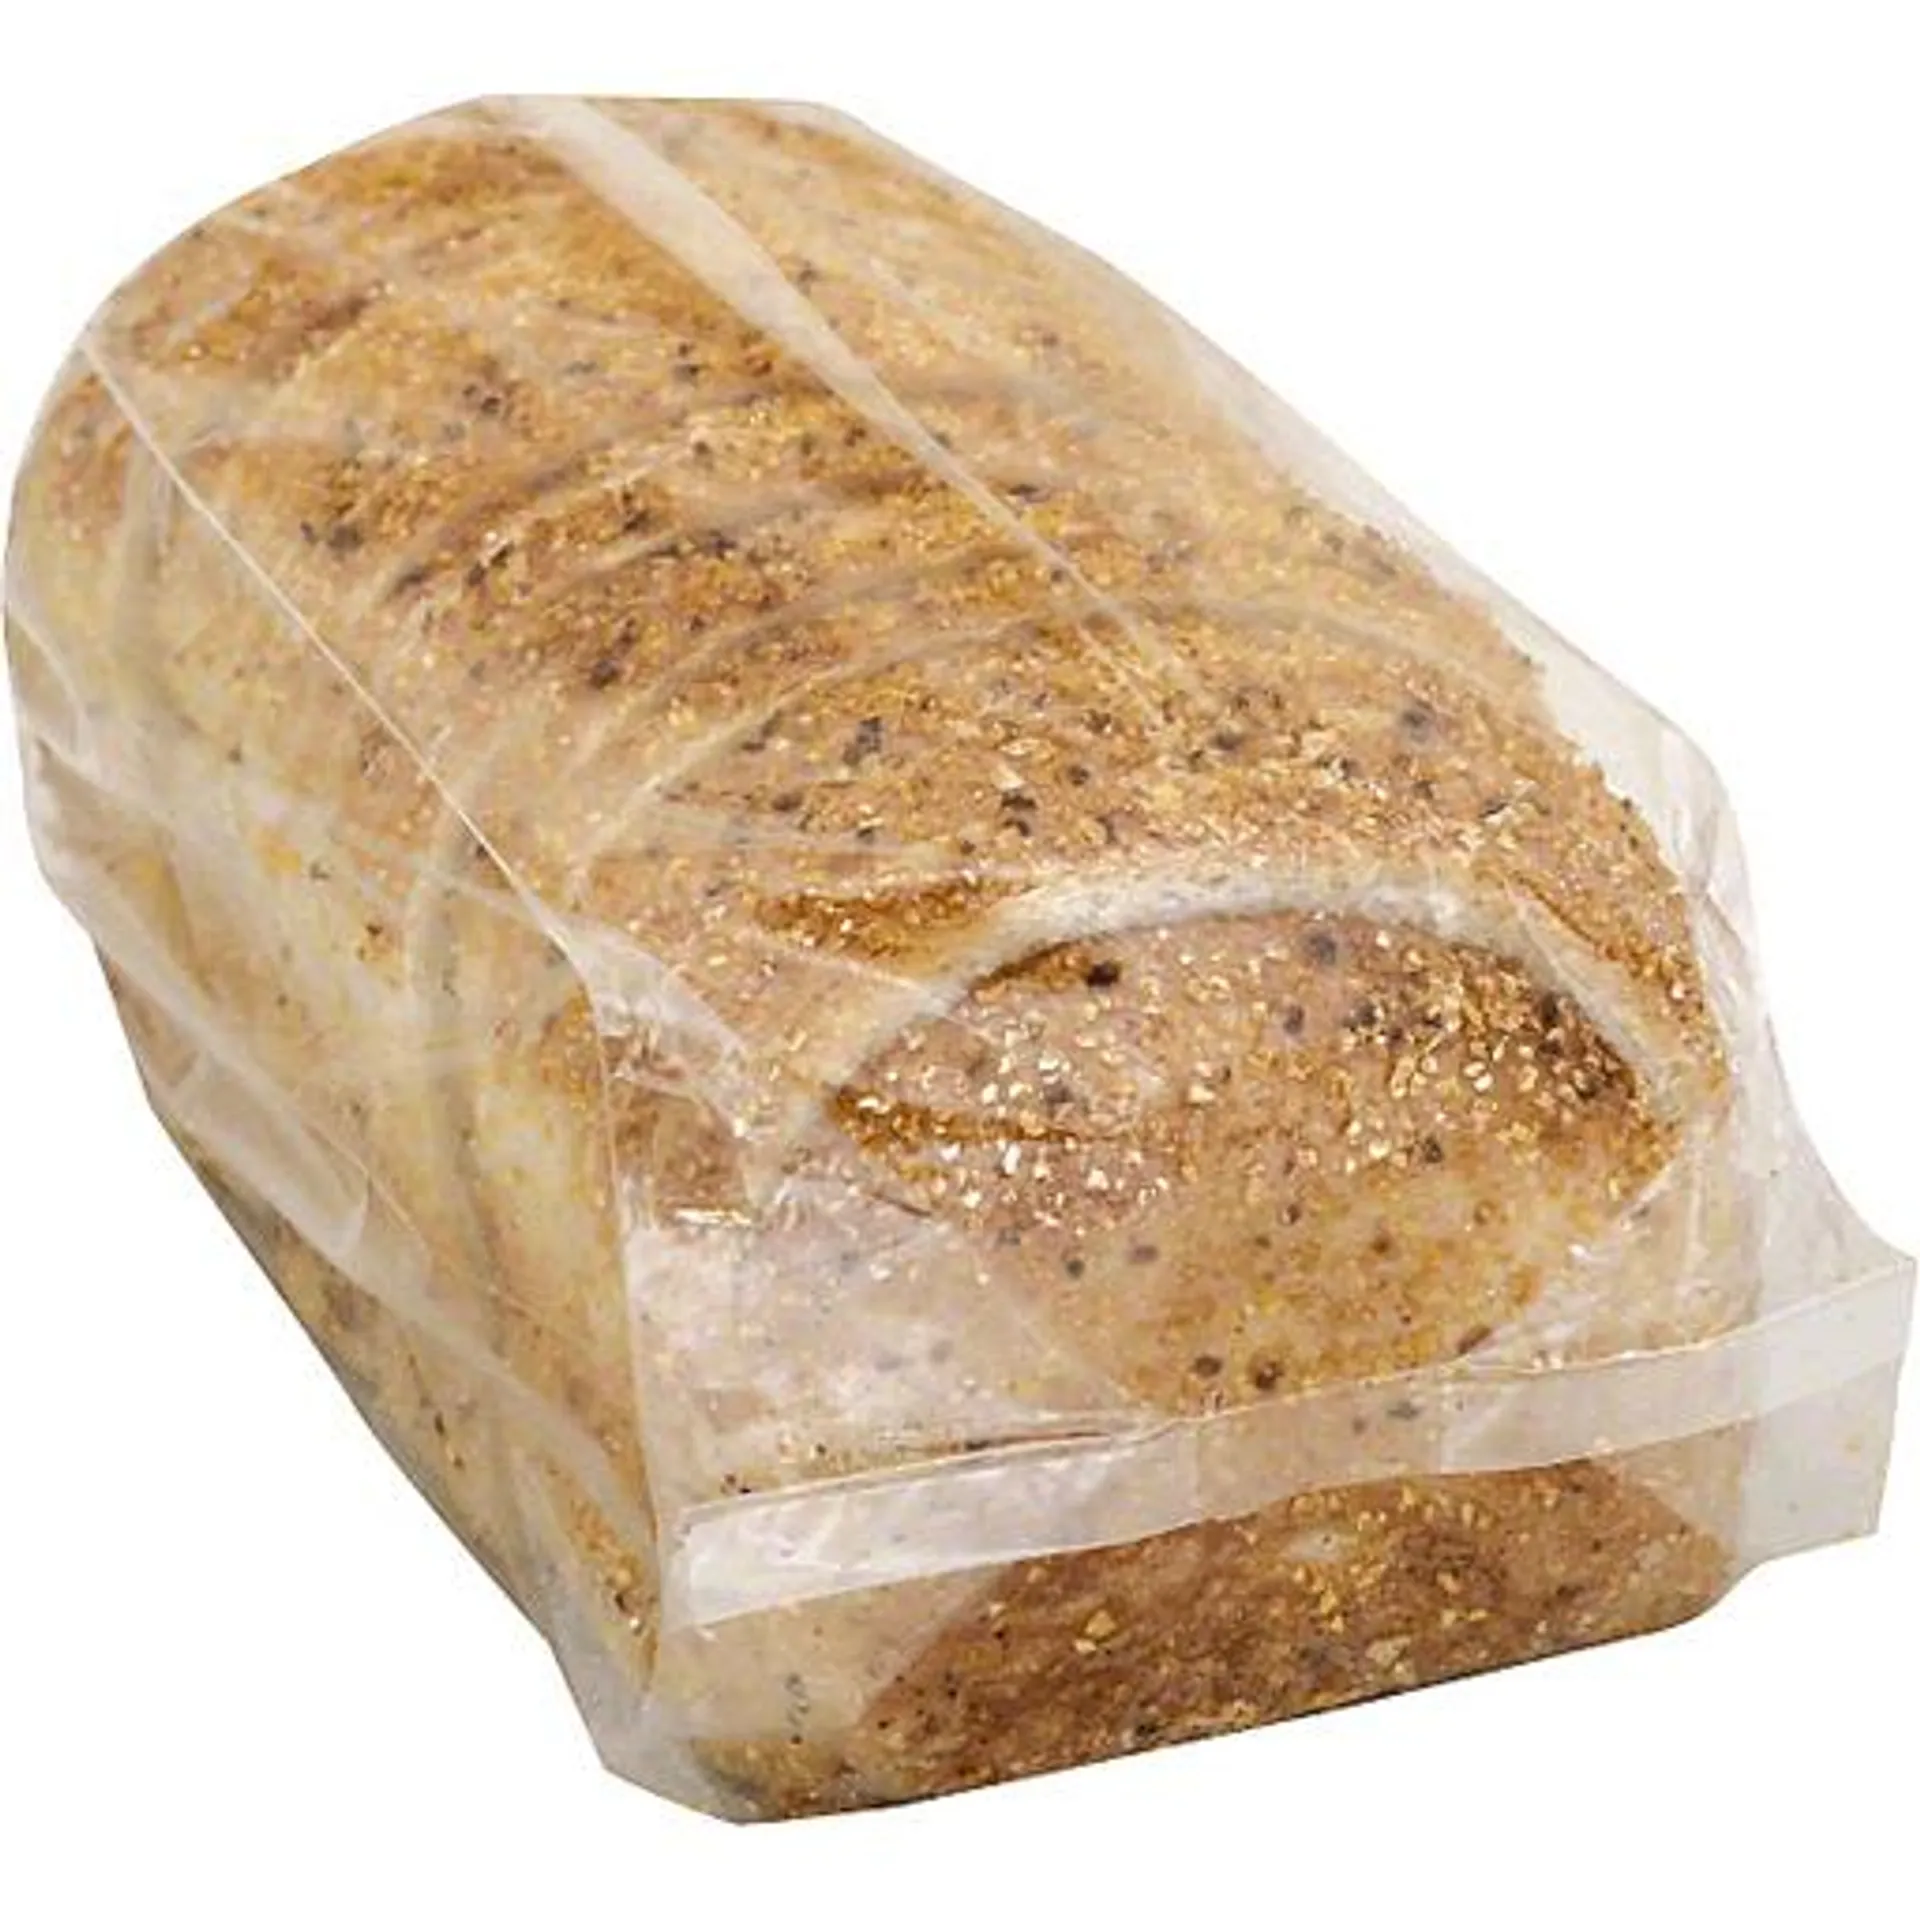 Calandra's Bakery - Whole Wheat Toasting Bread